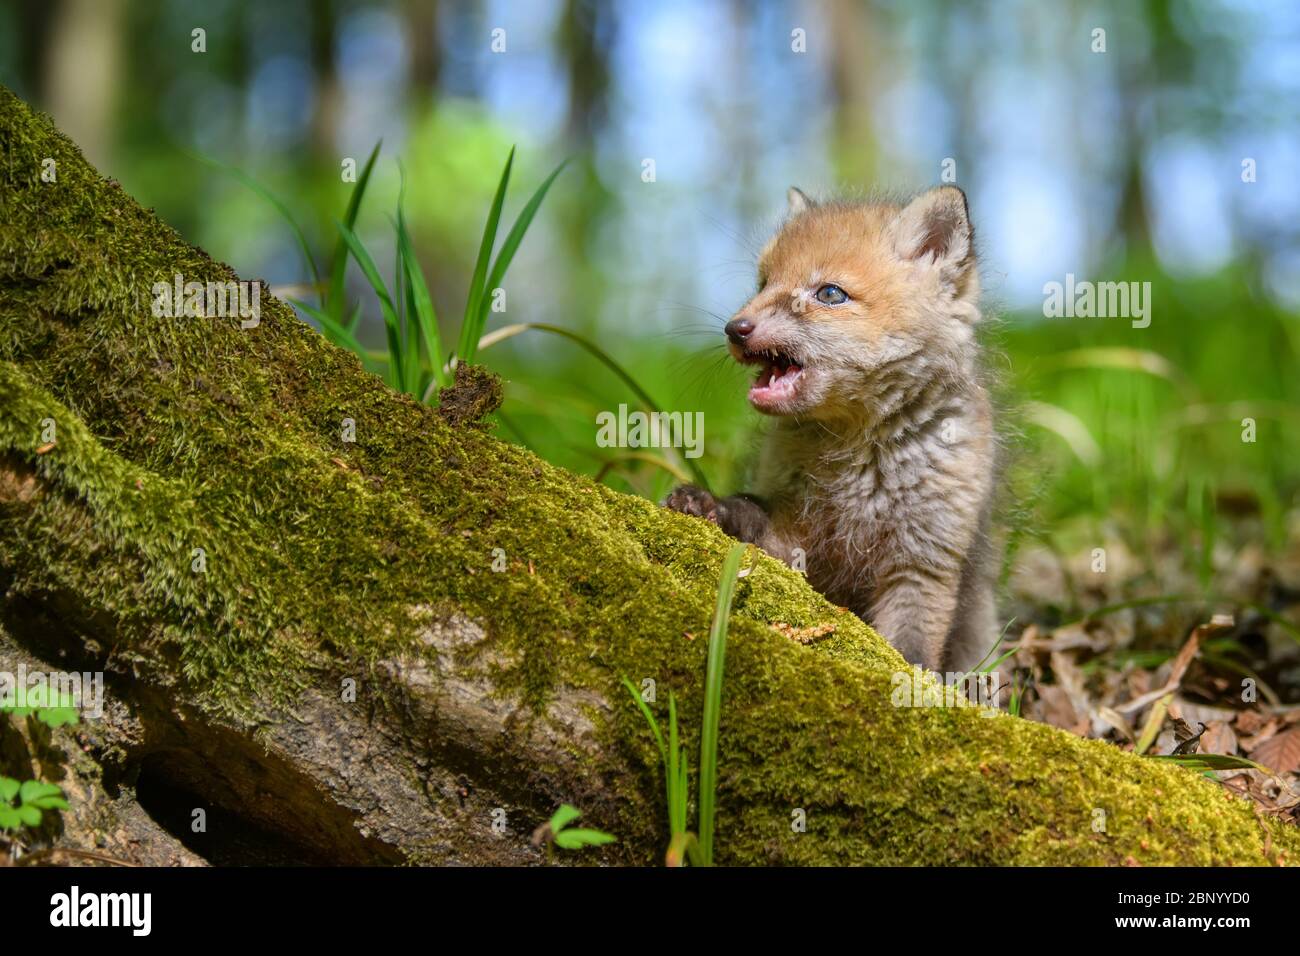 Rotfuchs, Vulpes Vulpes, kleines junges Junge im Wald. Niedliche kleine wilde Raubtiere in natürlicher Umgebung. Naturszene aus der Natur Stockfoto